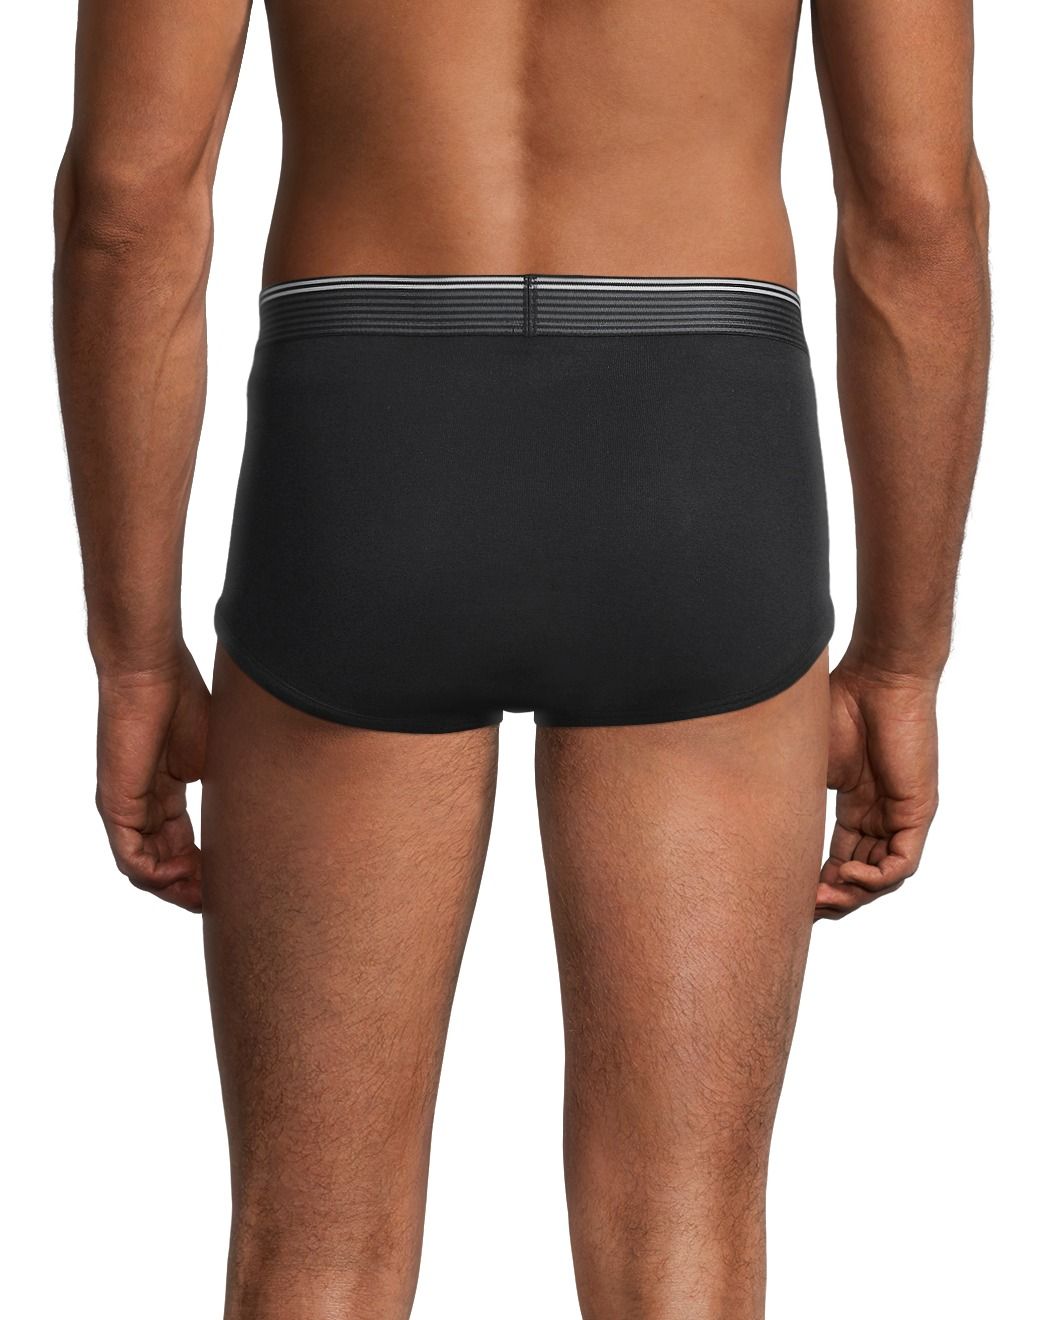 Denver Hayes Men's 4 Pack Classic Briefs Underwear